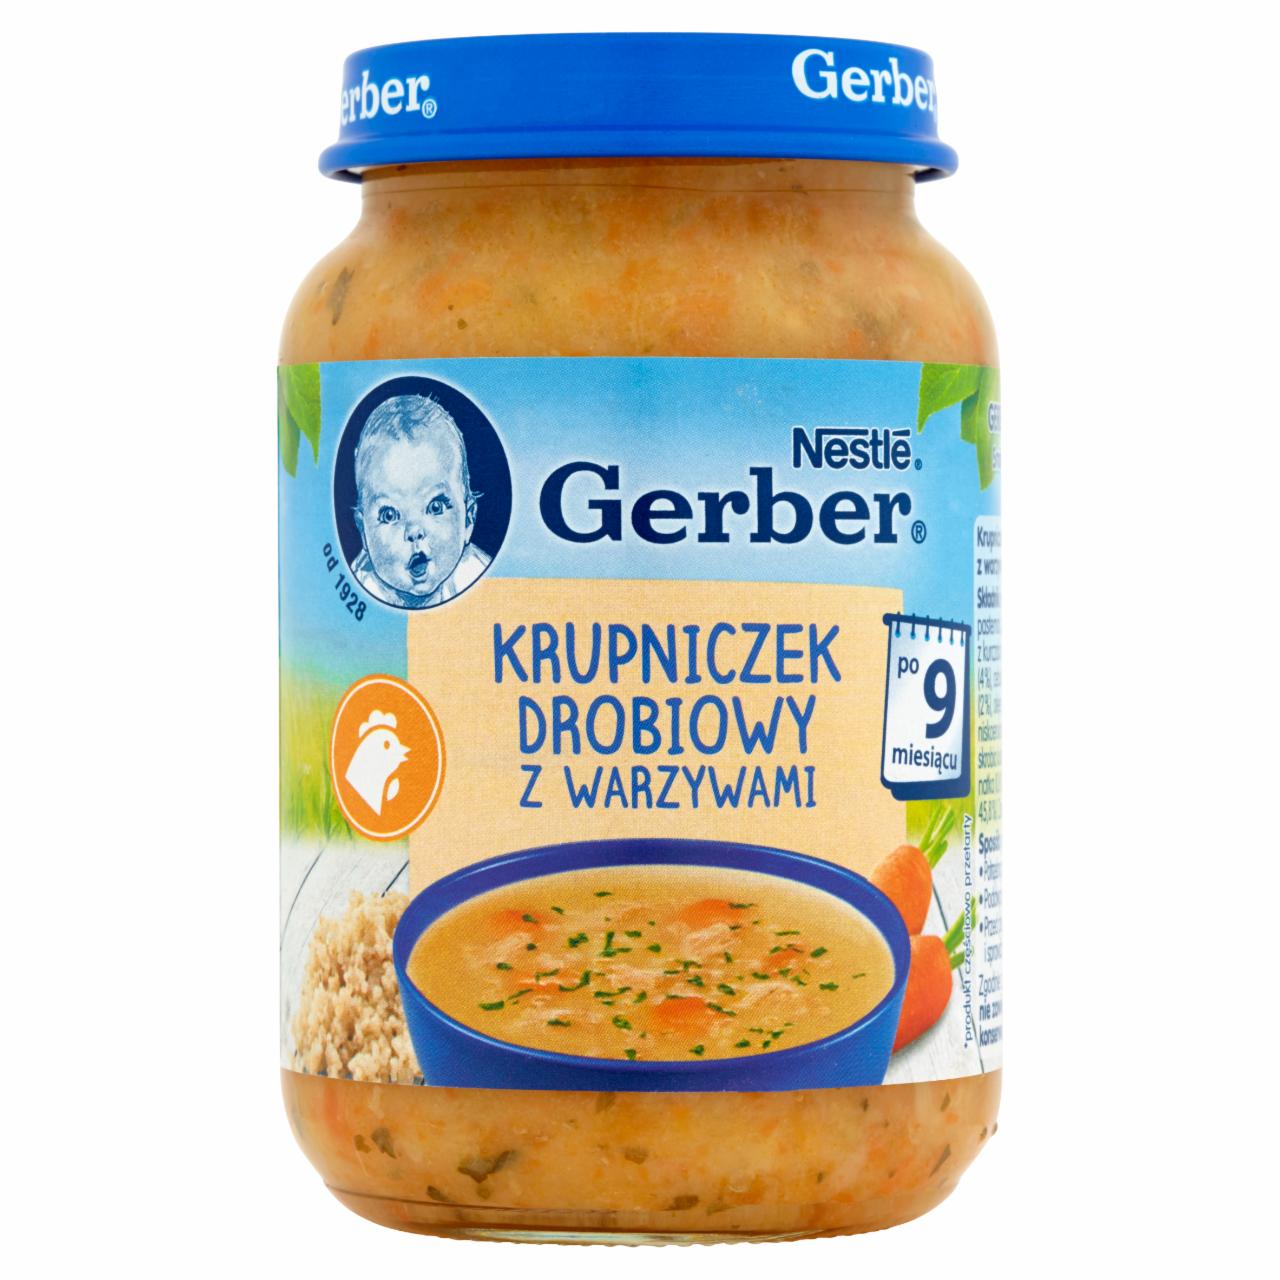 Zdjęcia - Gerber Krupniczek drobiowy z warzywami dla niemowląt po 9. miesiącu 190 g